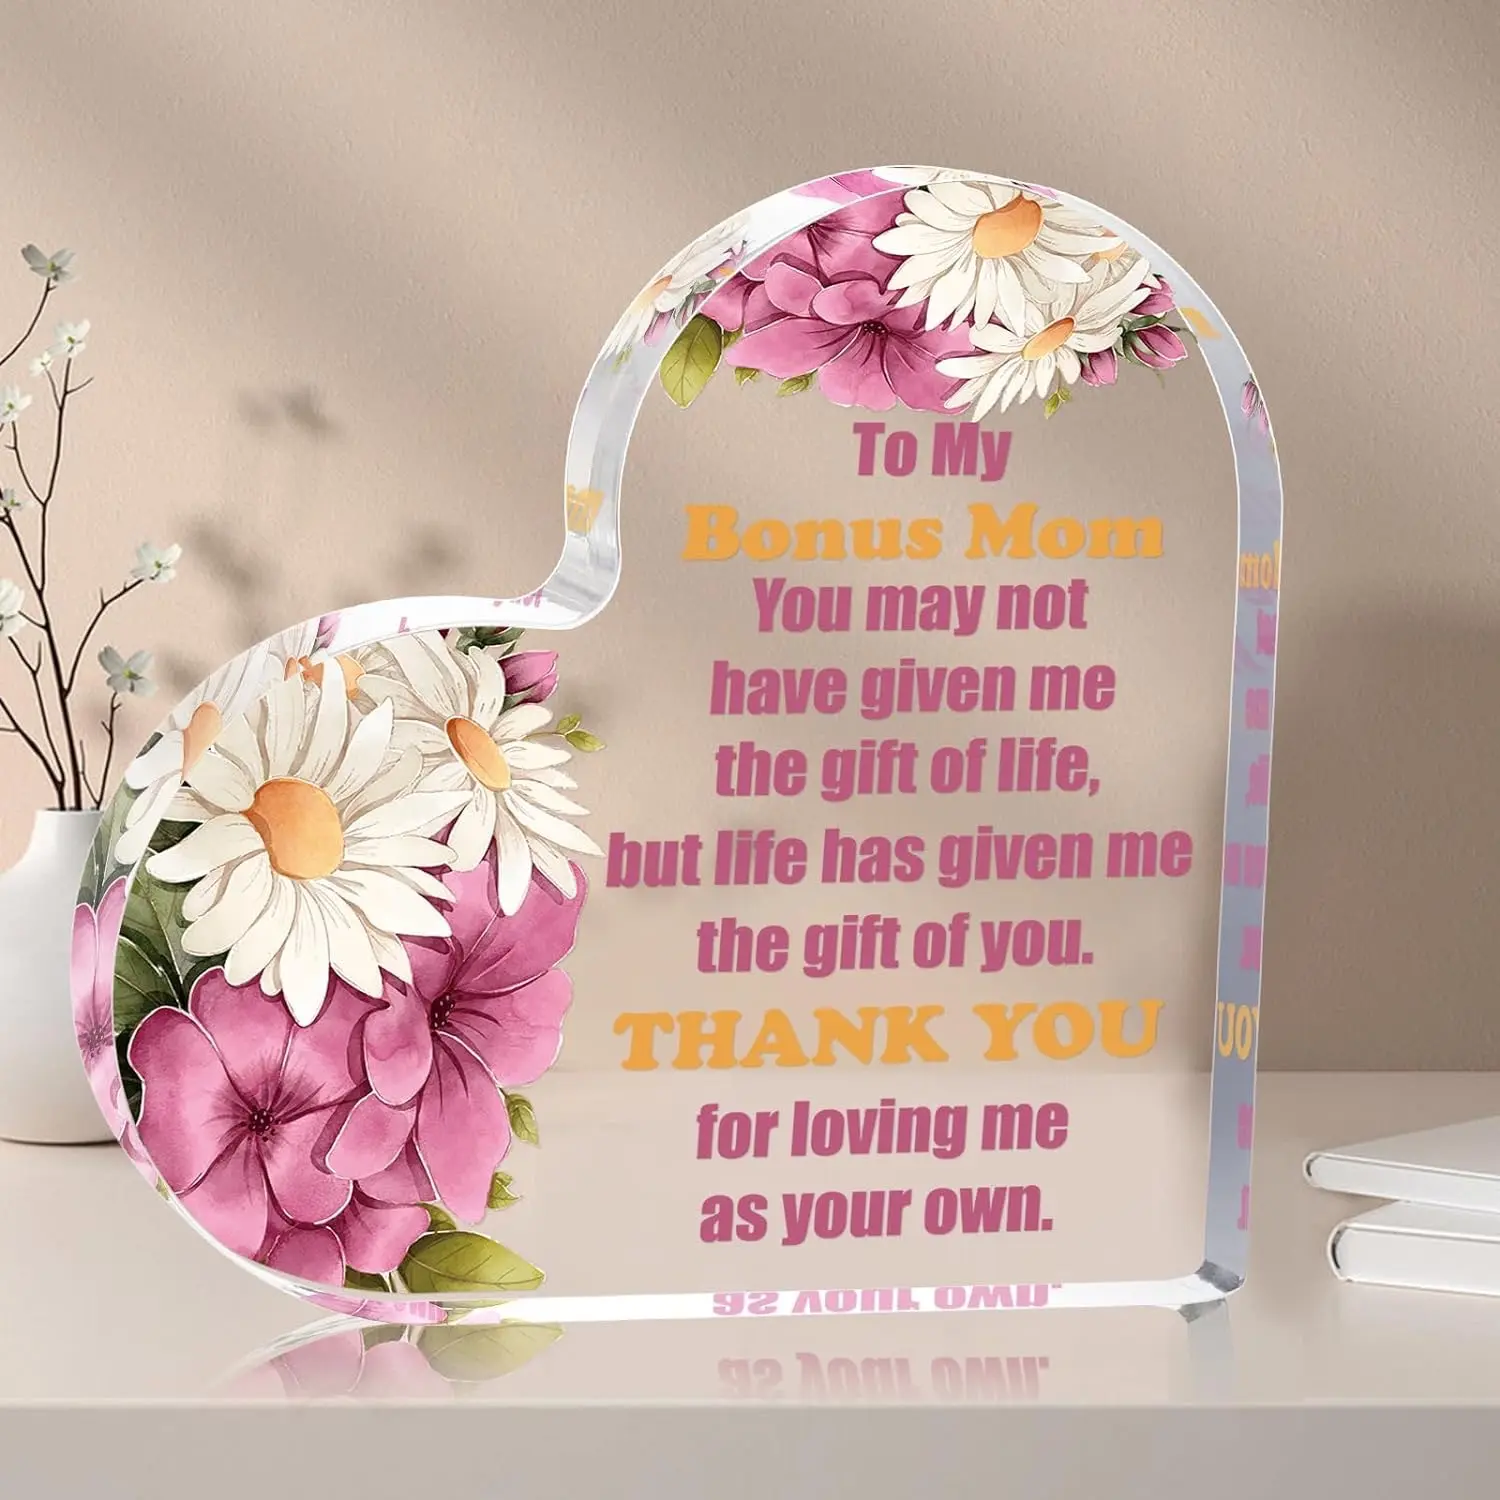 Toptan baskı temizle kalp şekilli akrilik plaketler ev masaüstü dekor noel şükran doğum günü hediyeleri anne anne için